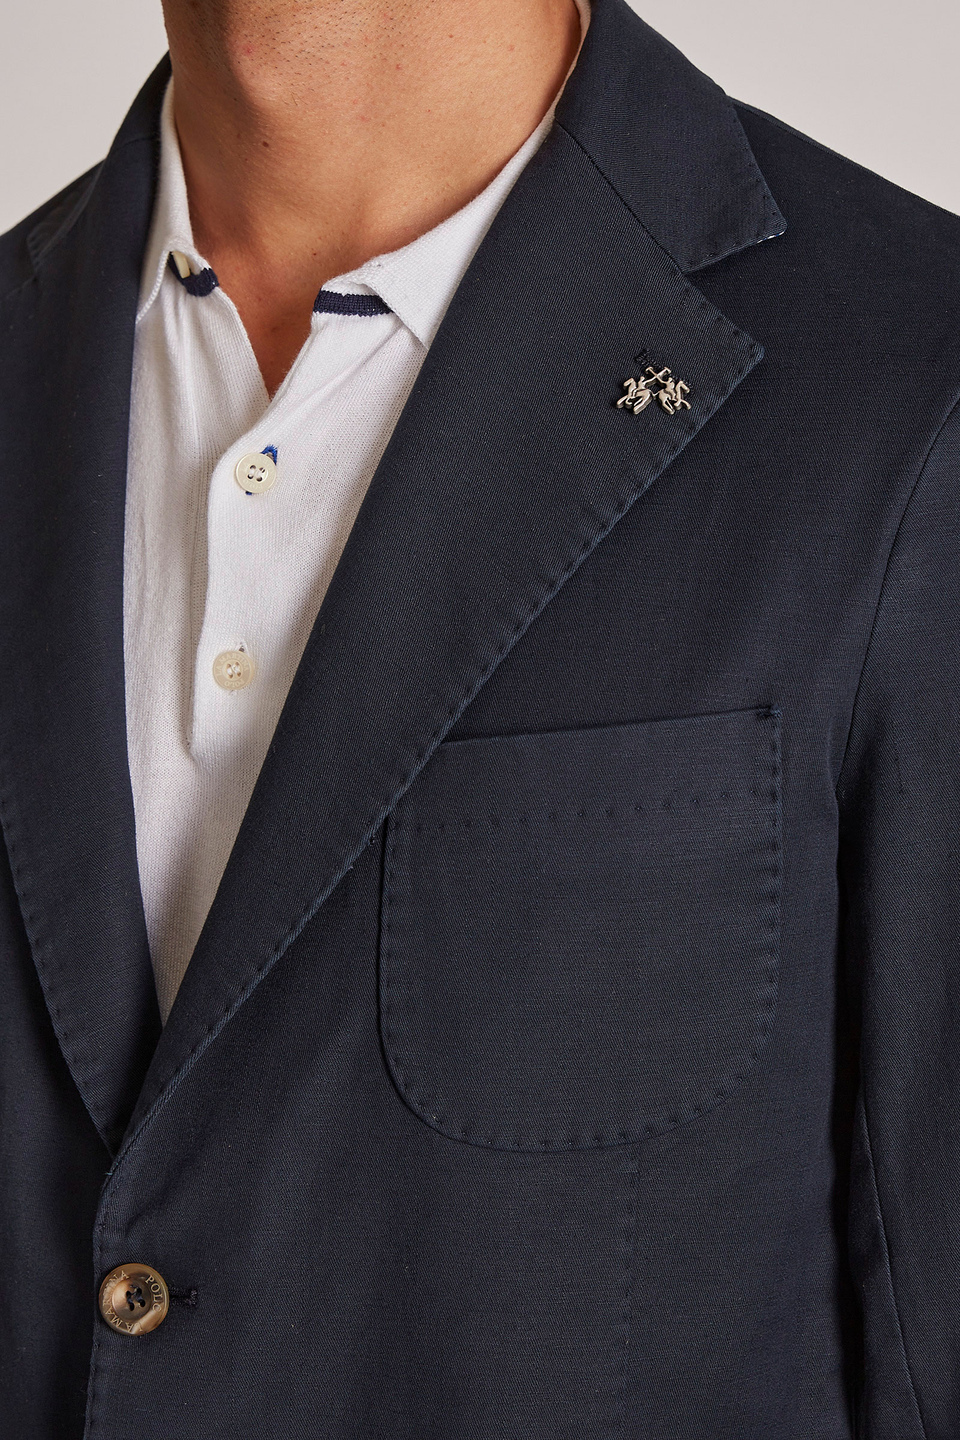 Giacca da uomo in cotone misto lino modello blazer regular fit - La Martina - Official Online Shop